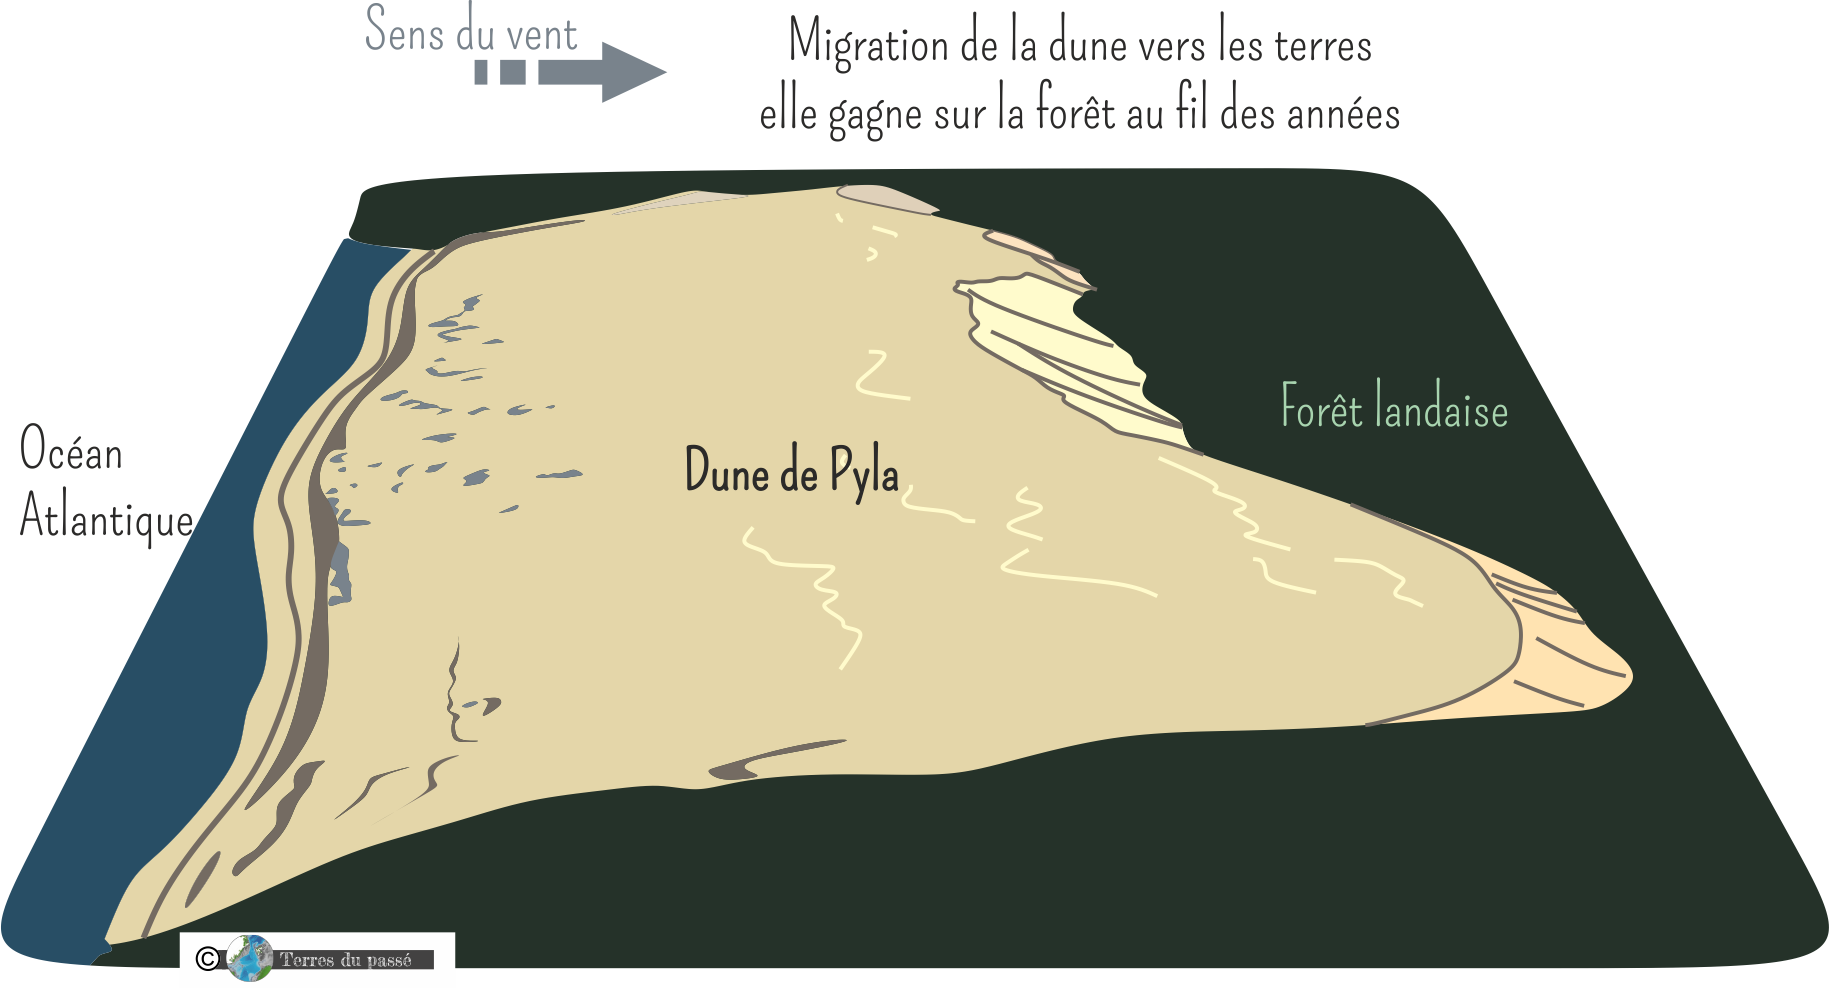 Dune du Pilat, dune de Pyla, mouvement de dune